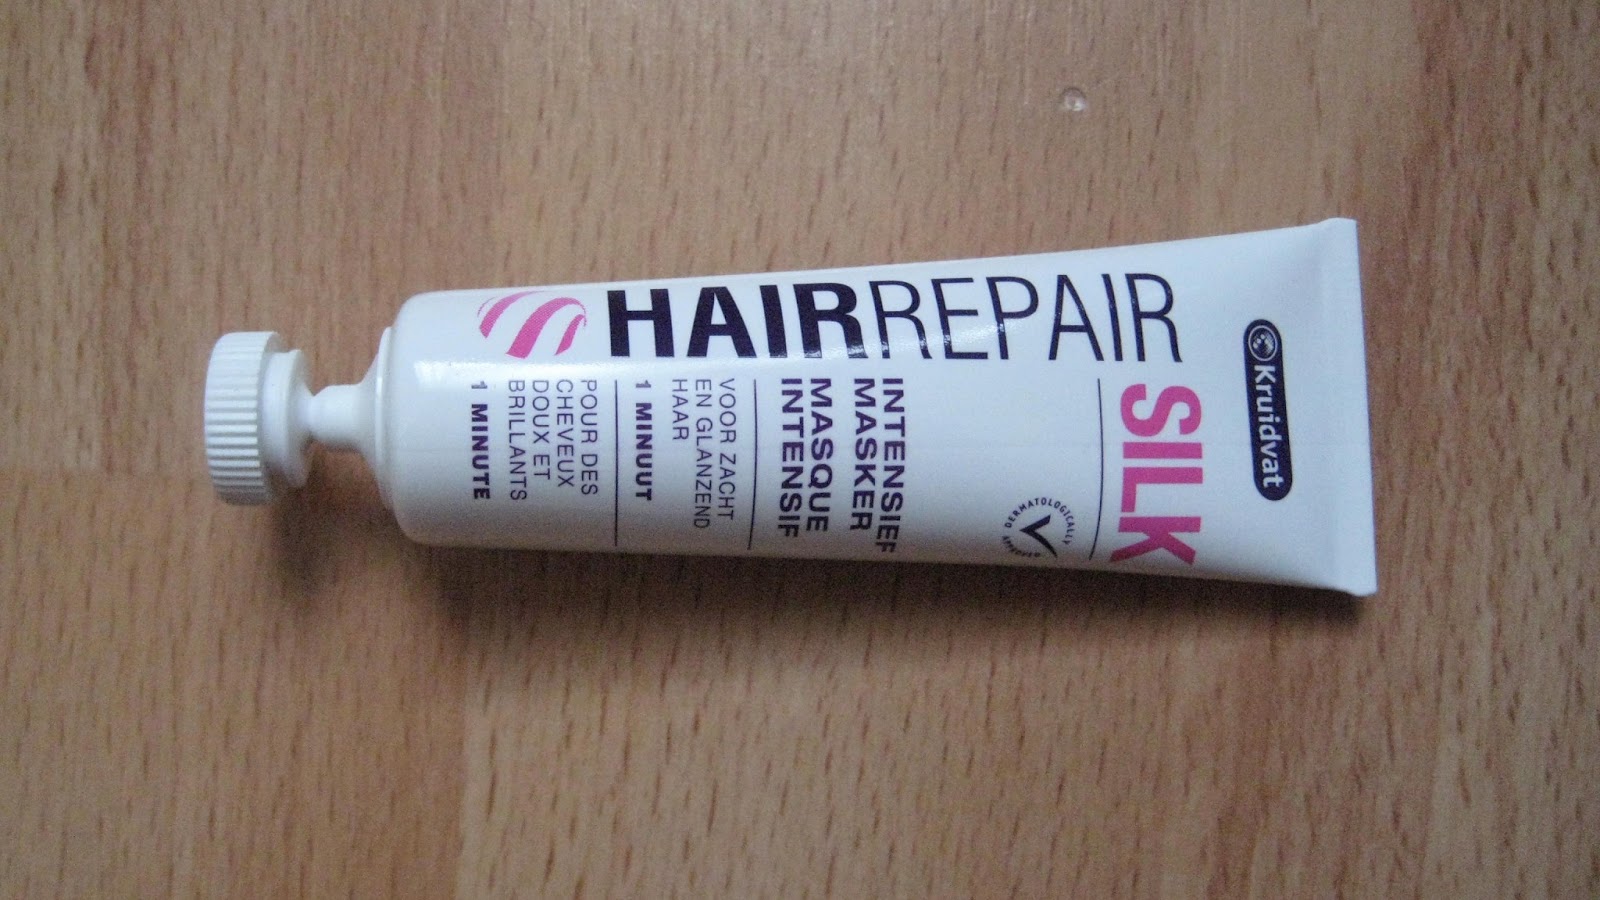 Huiskamer mozaïek essay Review: Kruidvat Hairrepair Silk intensief 1-minuut masker - Irispraat.nl